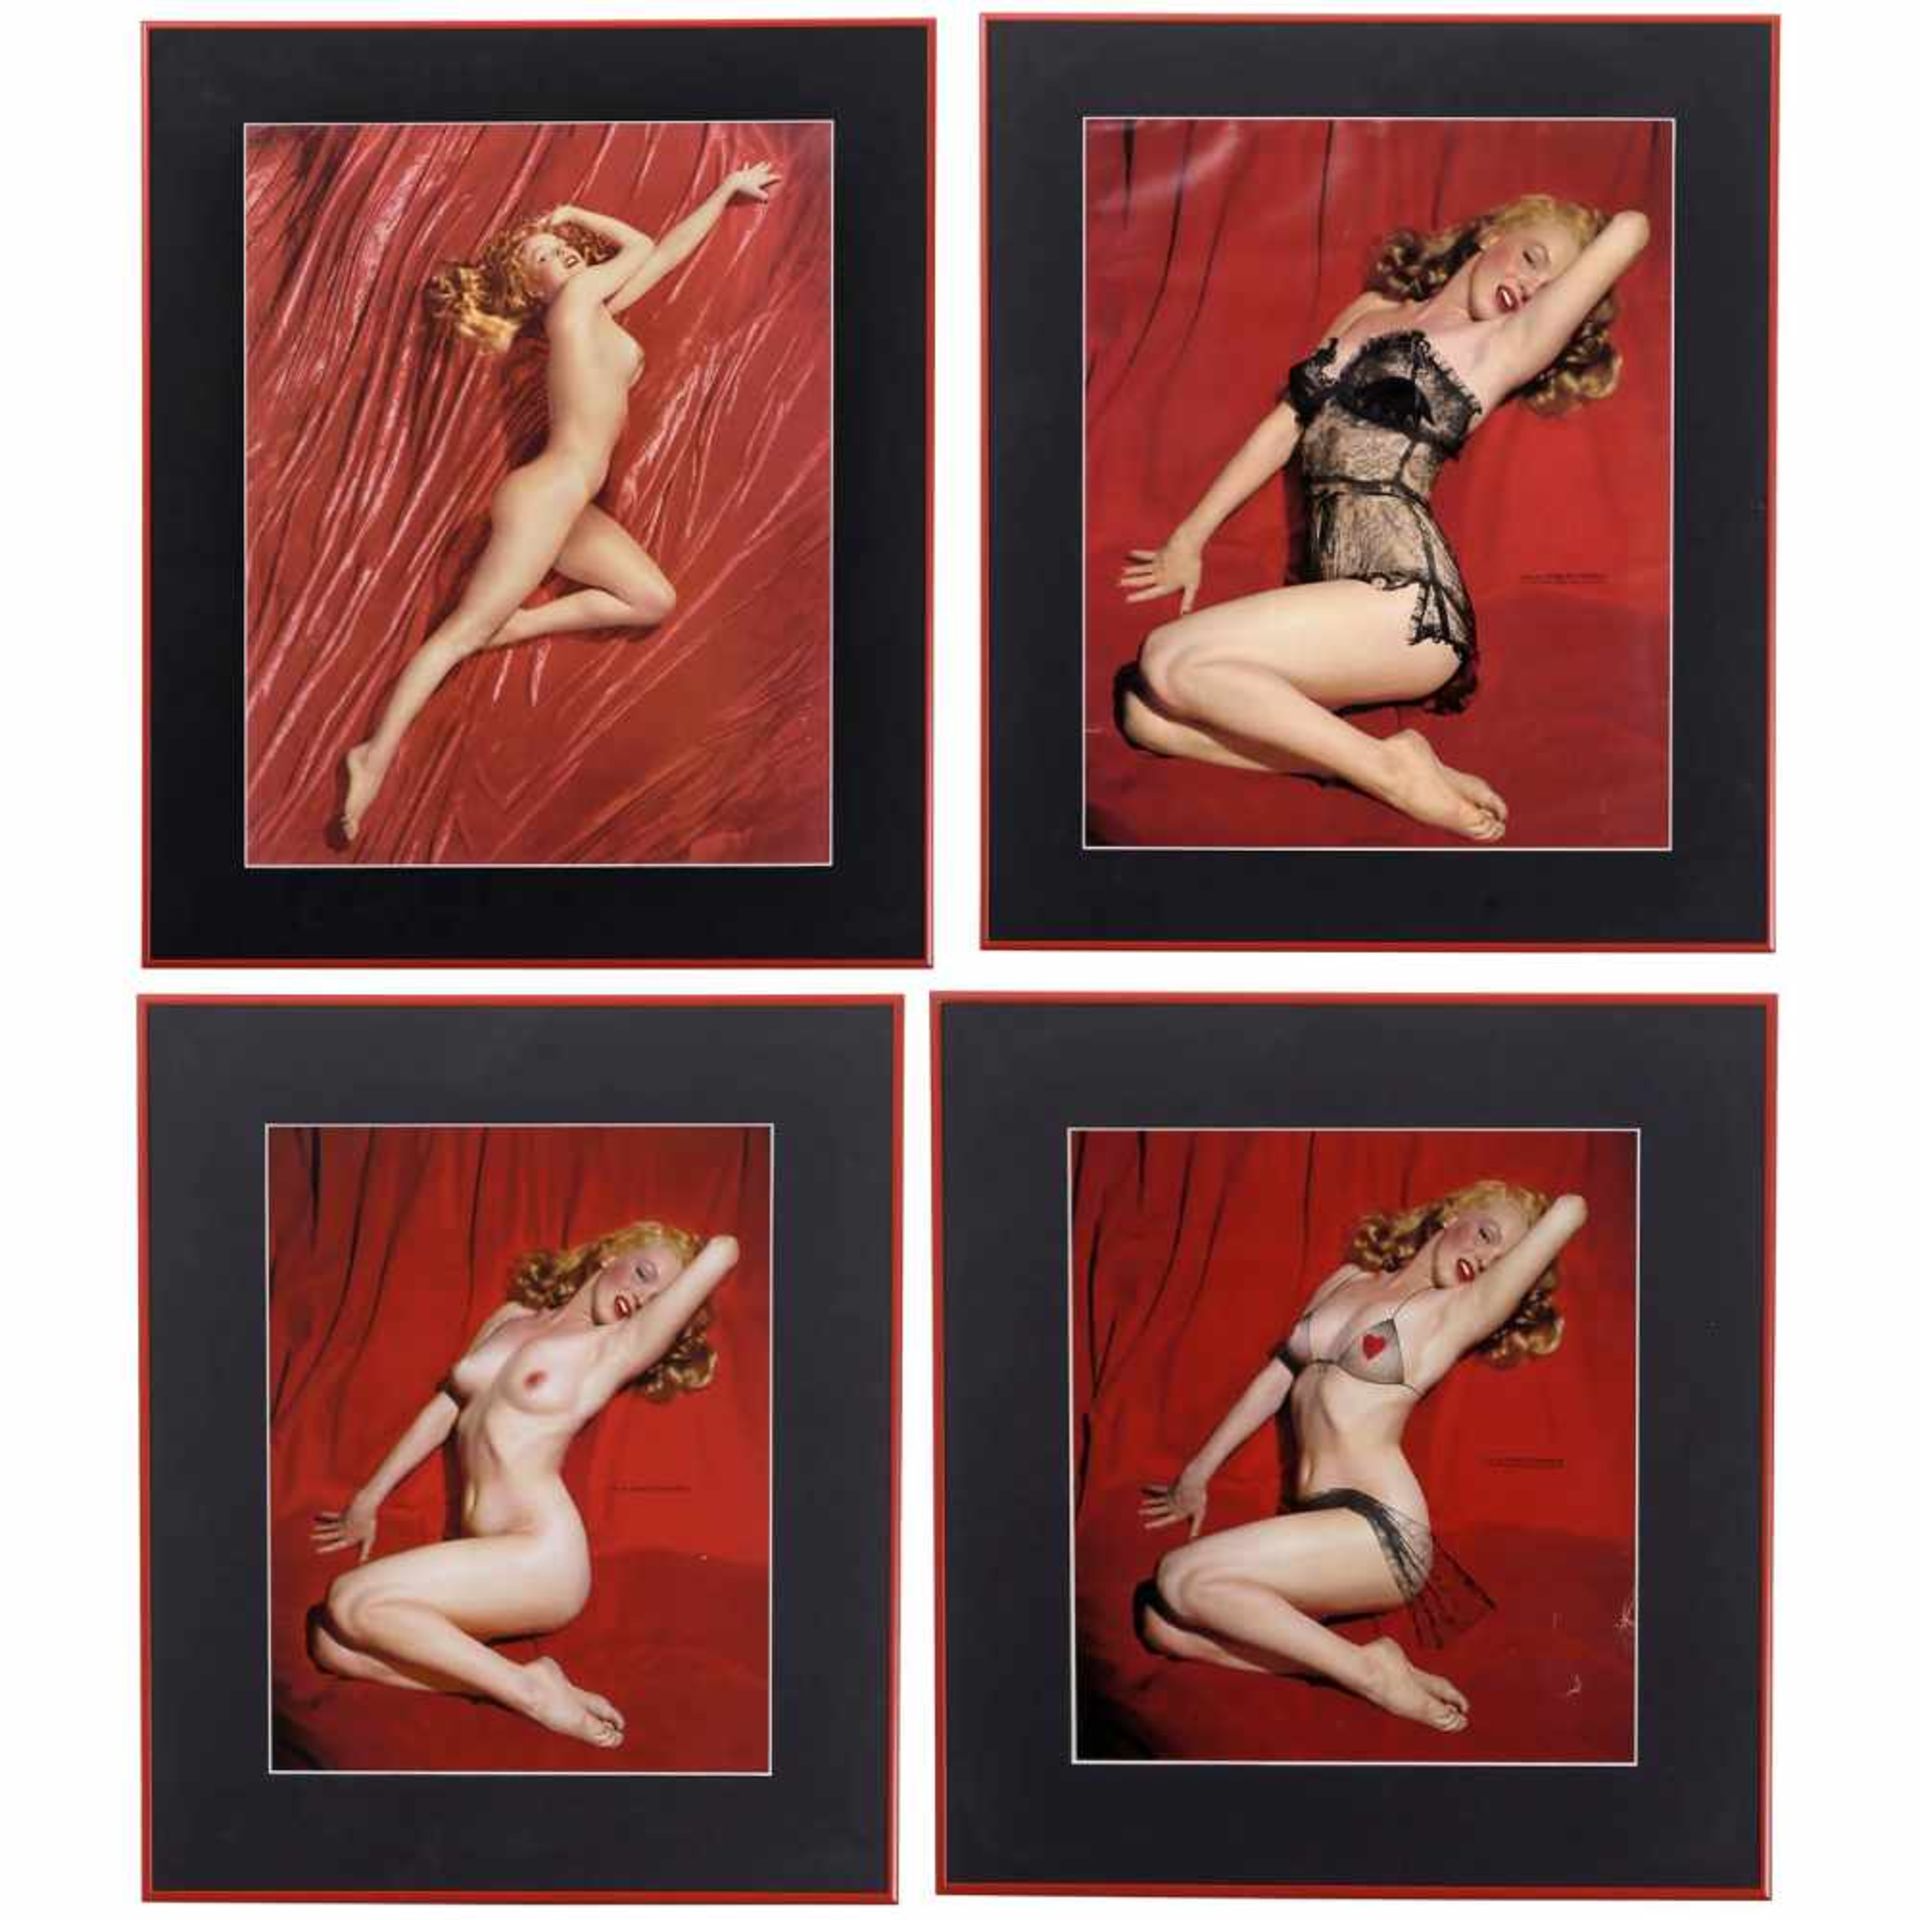 4 Marilyn-Monroe-Photographien von Tom Kelly